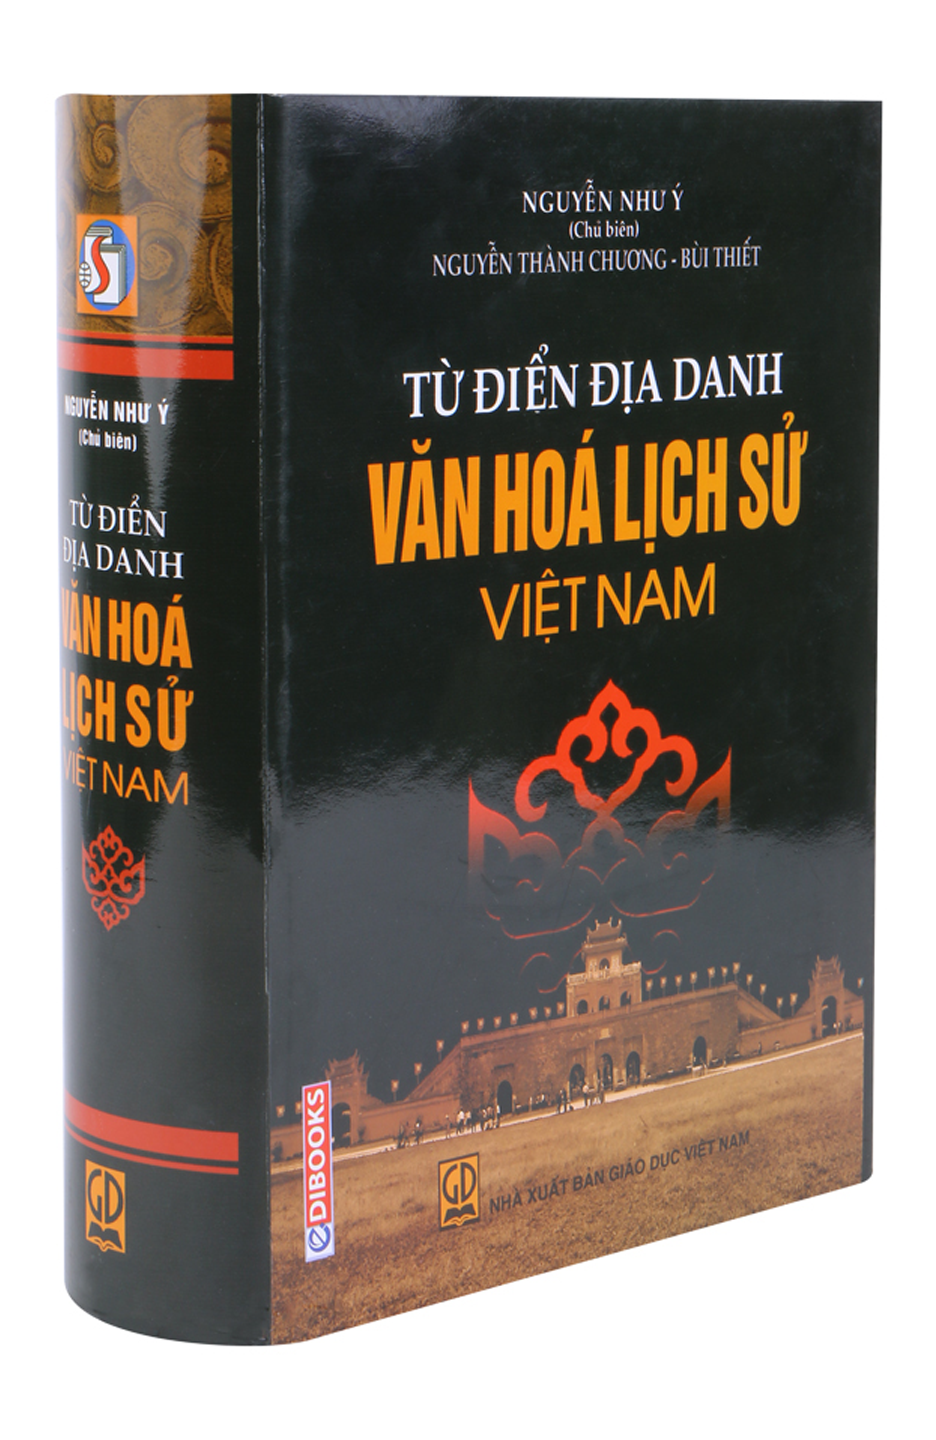 Từ Điển Địa Danh Văn Hóa Lịch Sử Việt Nam.